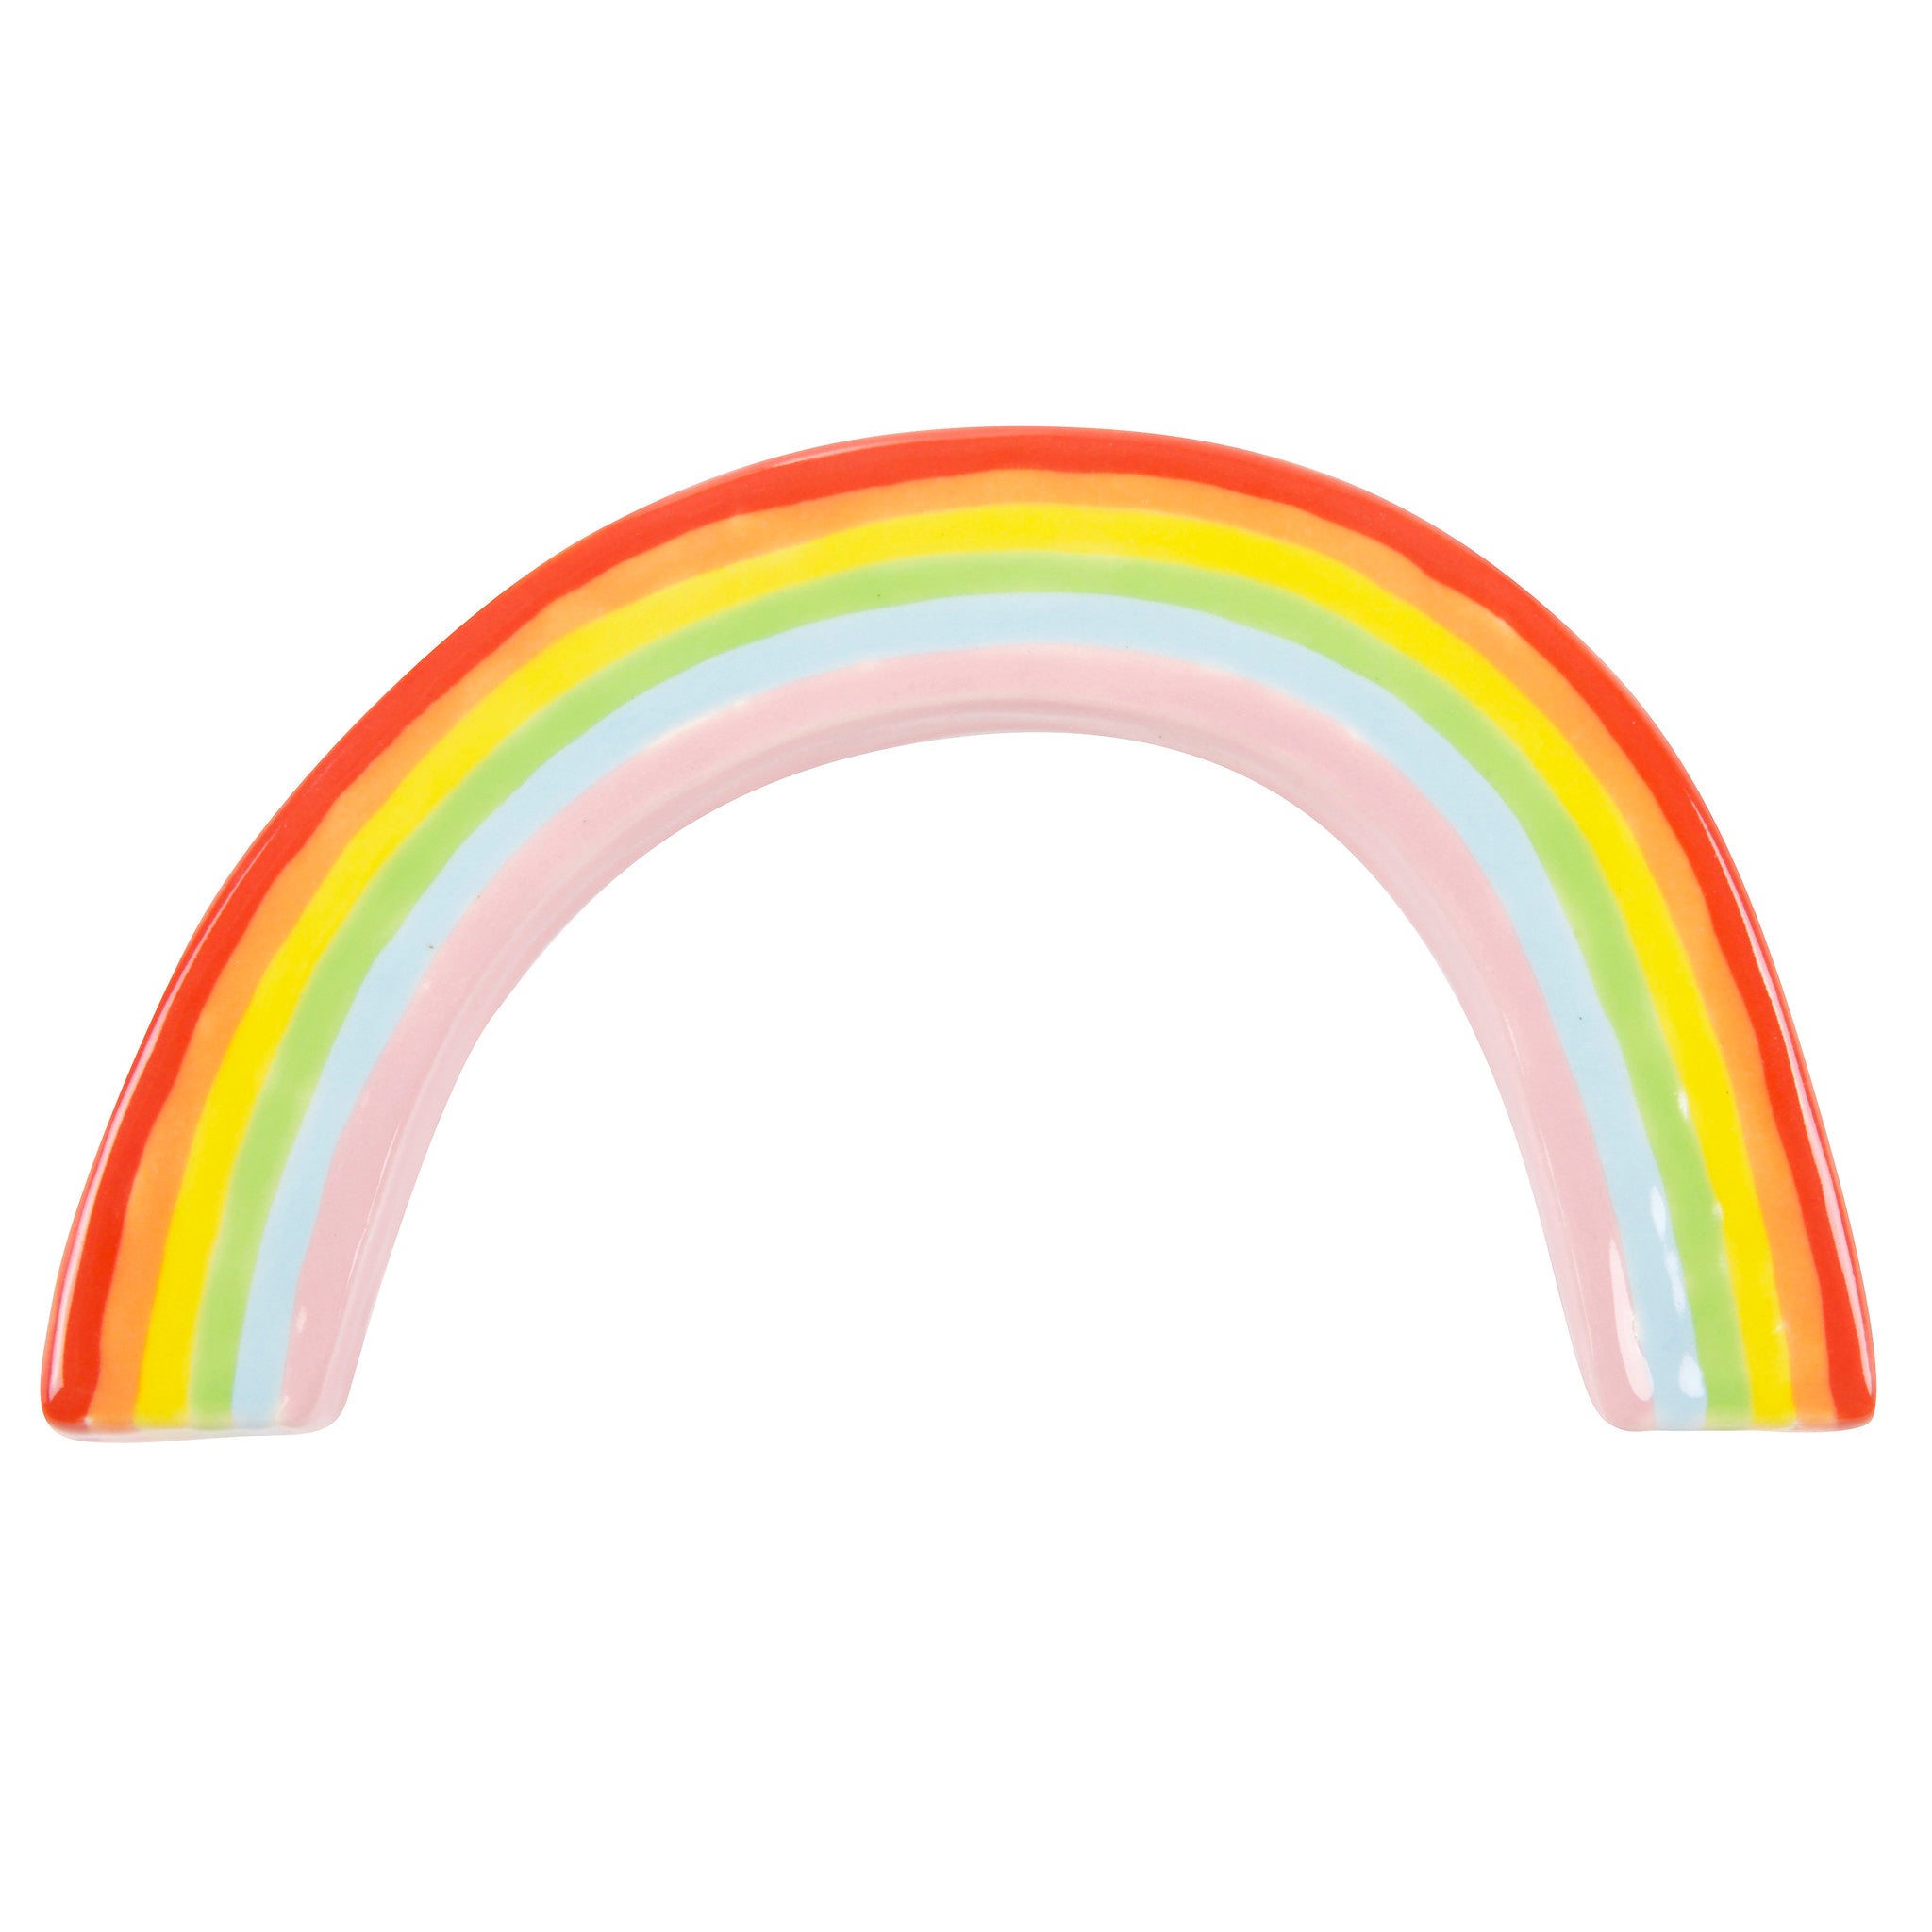 Little Rainbow - Lorien Stern